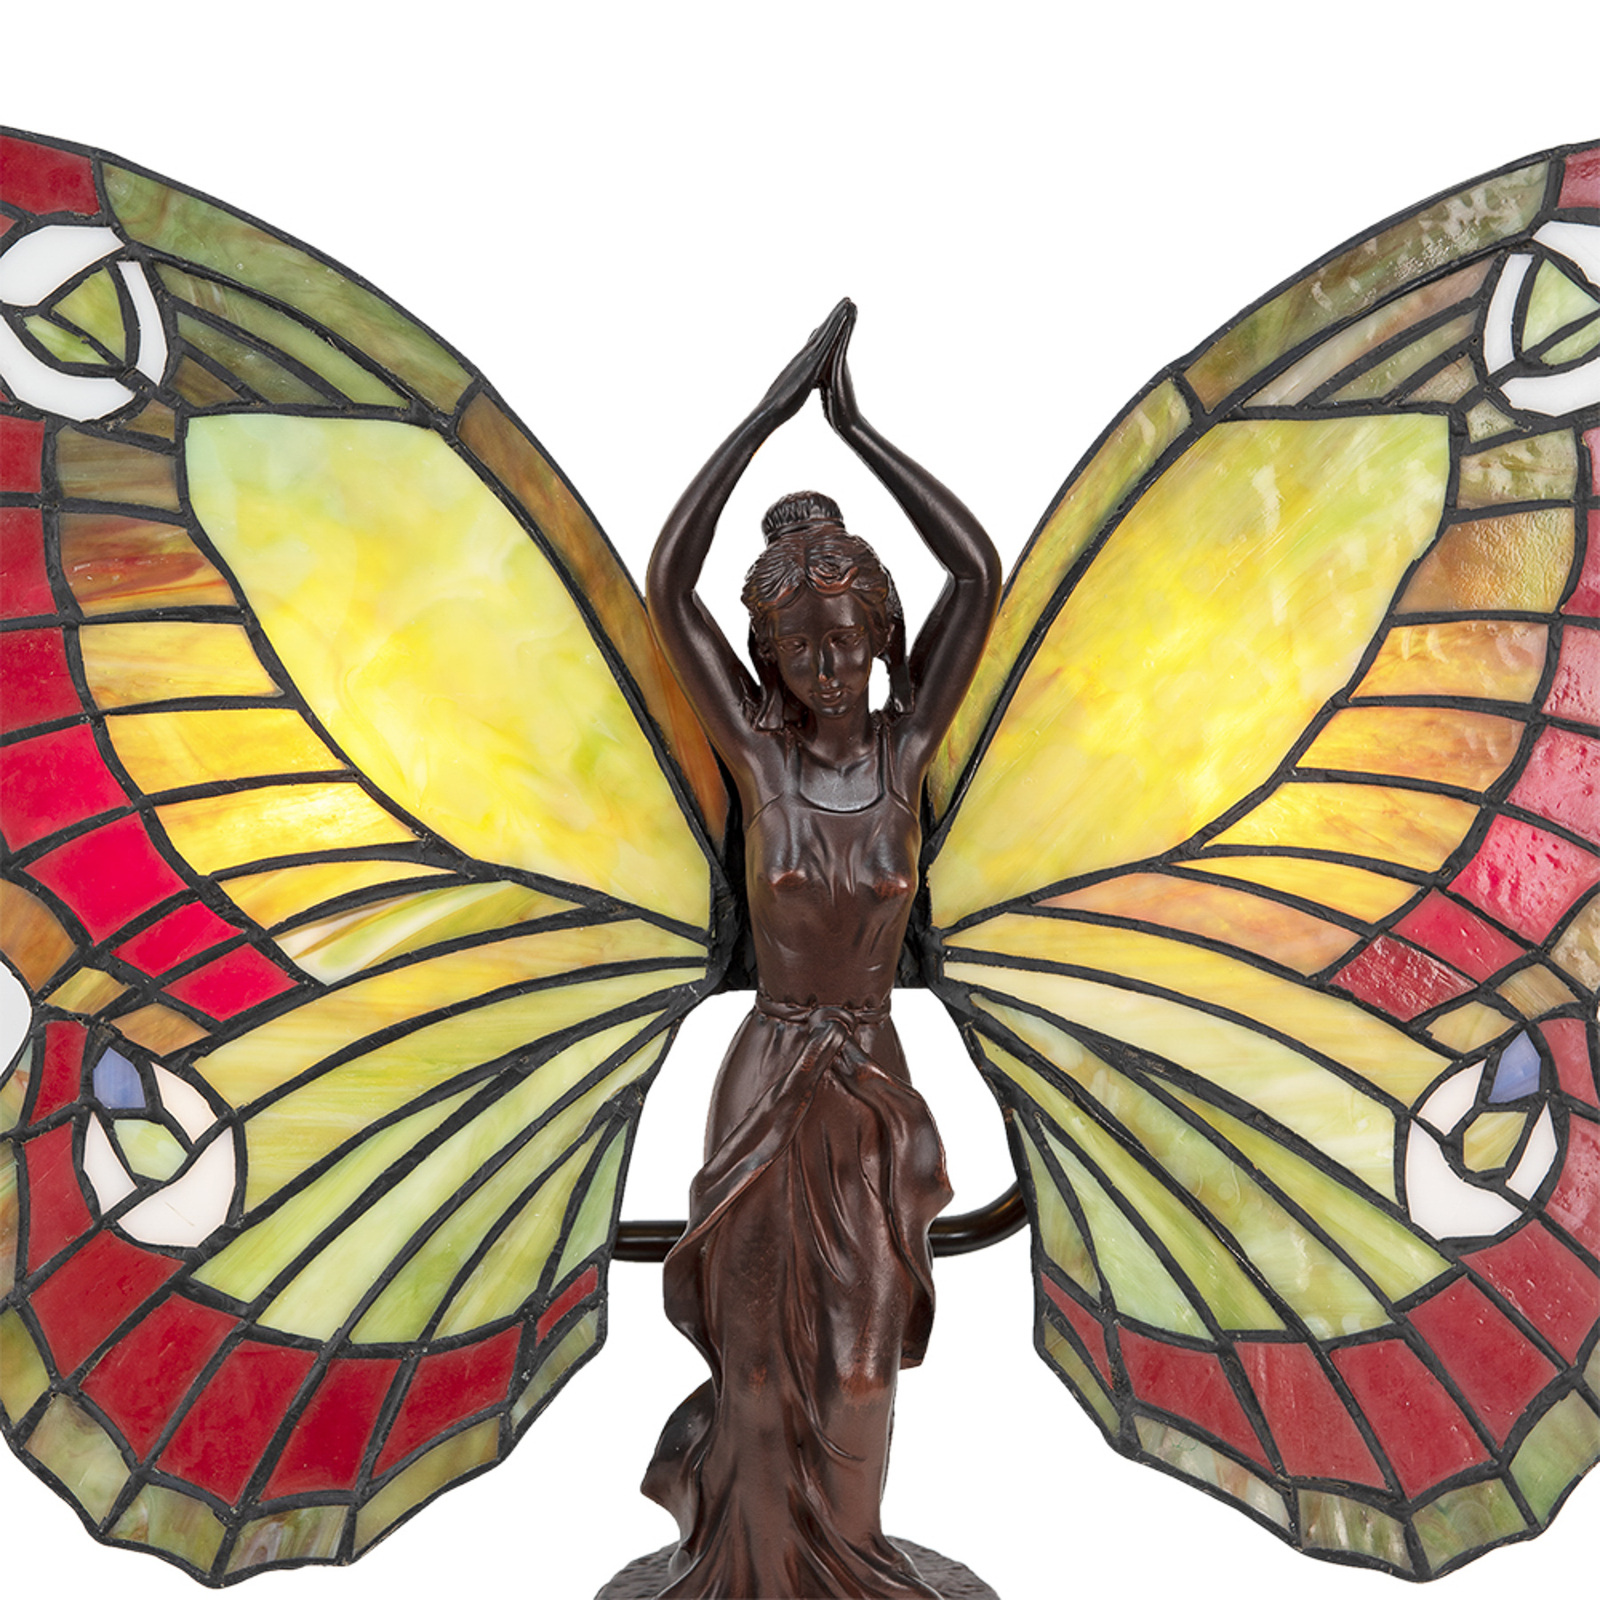 Tischlampe 5LL-6085 Schmetterling im Tiffany-Stil